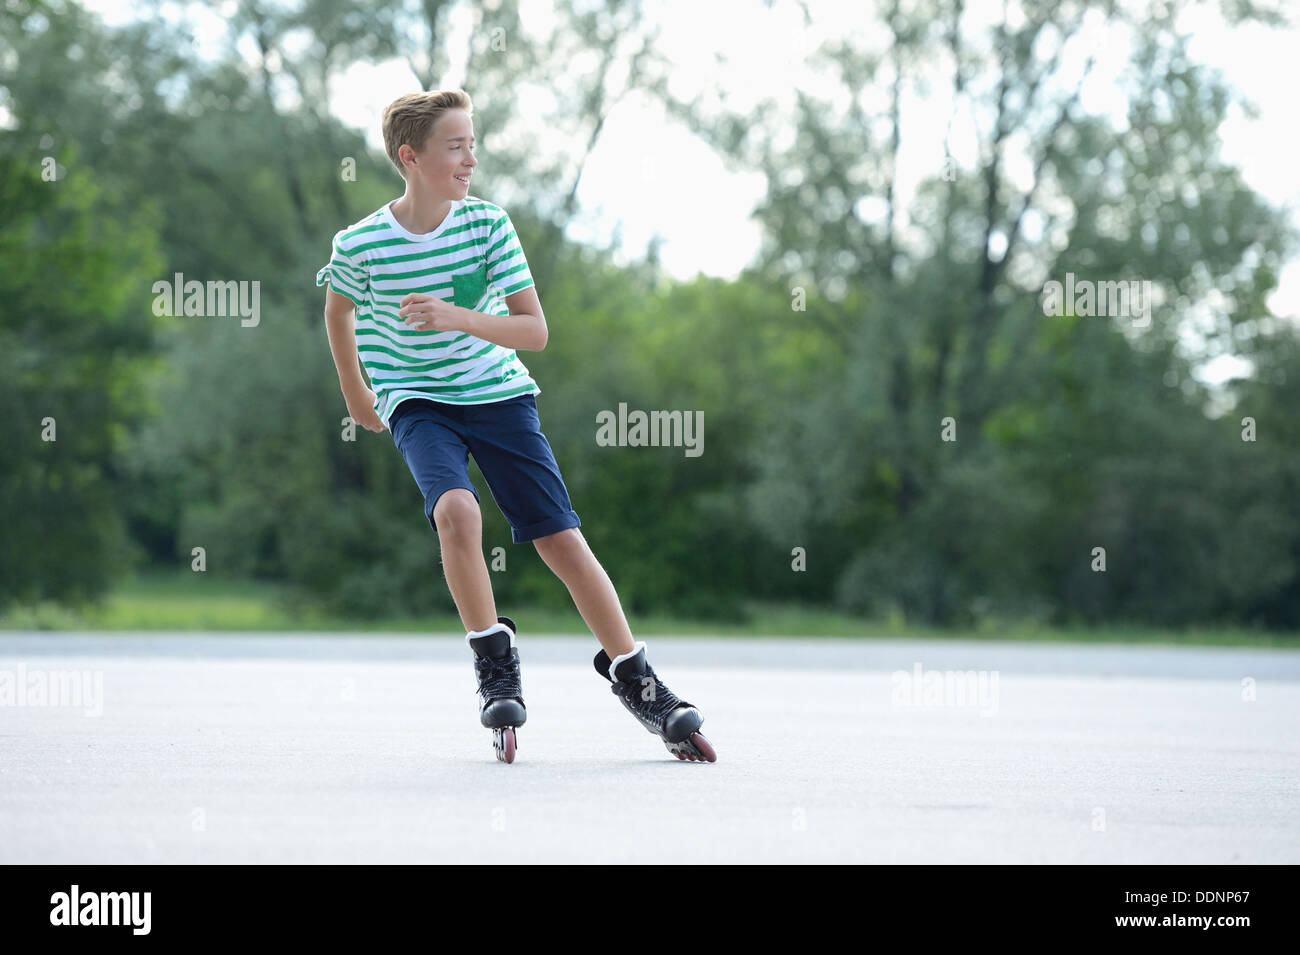 Garçon avec des patins à roues alignées sur une place de sport Banque D'Images